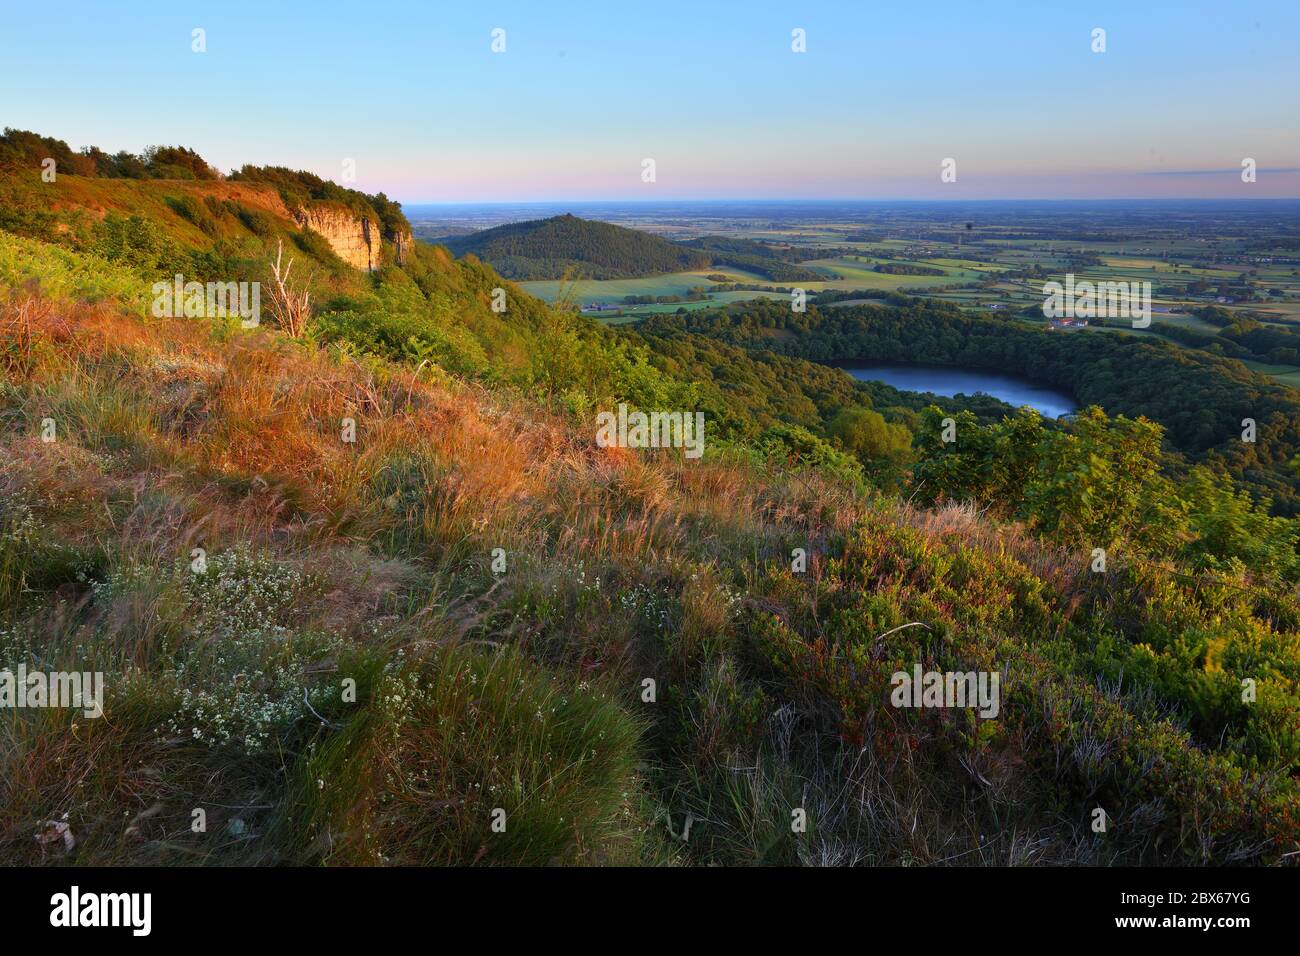 Erhöhte Sicht auf North Yorkshire und Lake Gormire von Sutton Bank in der Nähe von Thirsk, North Yorkshire Moors National Park, England, Großbritannien Stockfoto